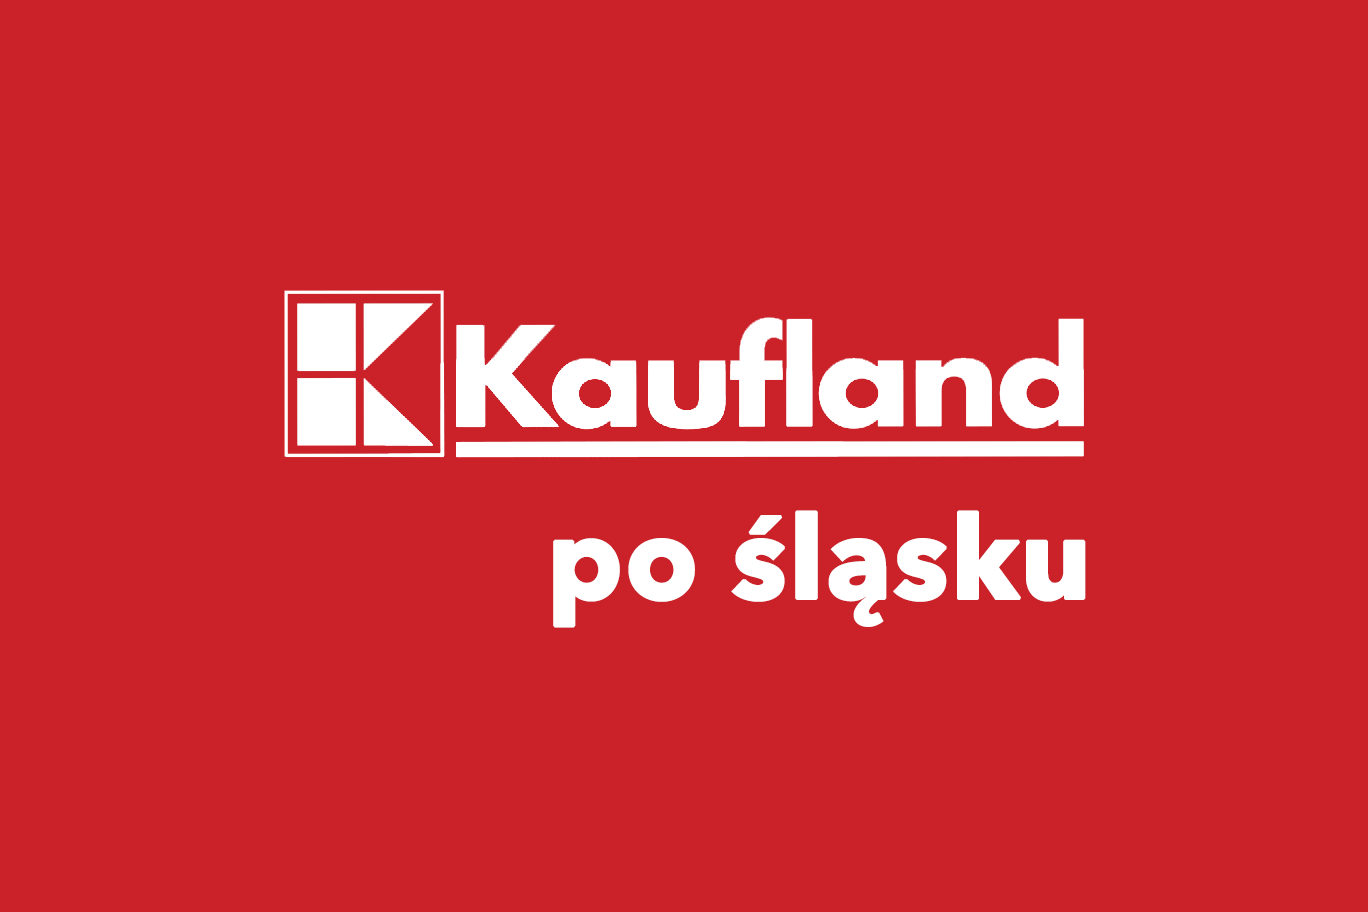 Dwujęzycznie w sklepach Kaufland na Śląsku